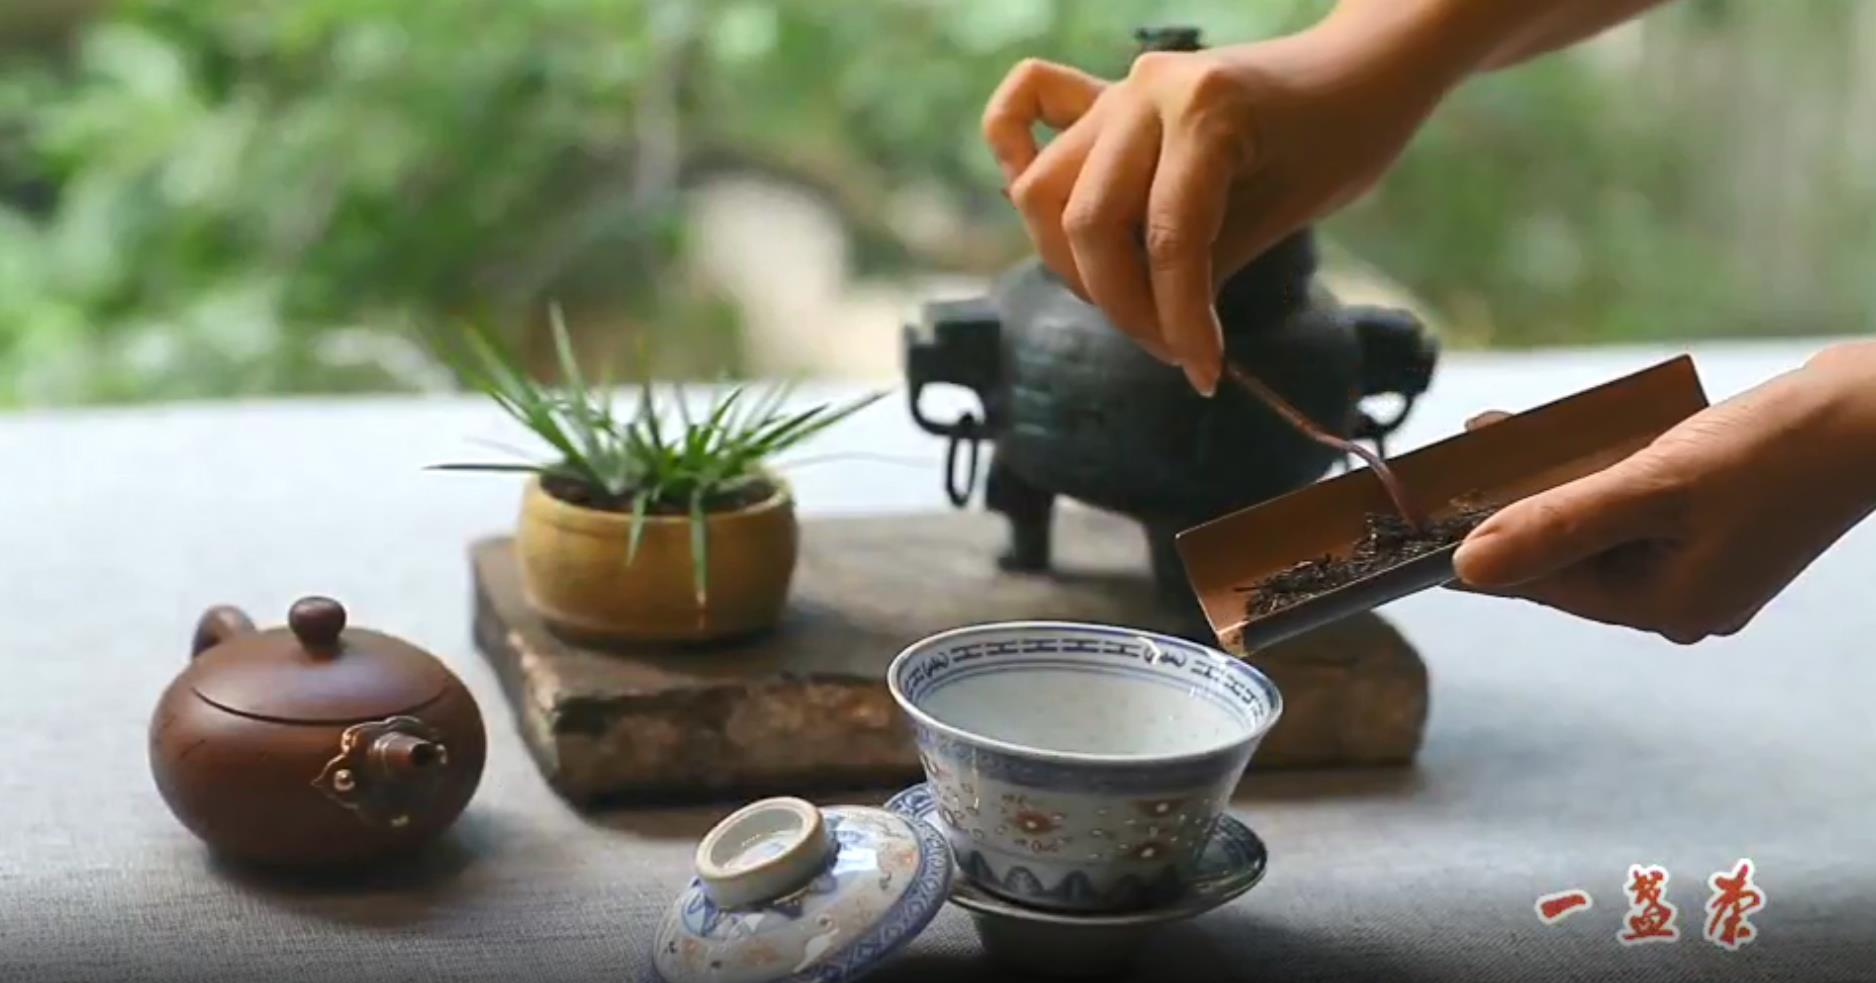 【云约茶短视频】喝茶+锔瓷的翔哥-一盏茶